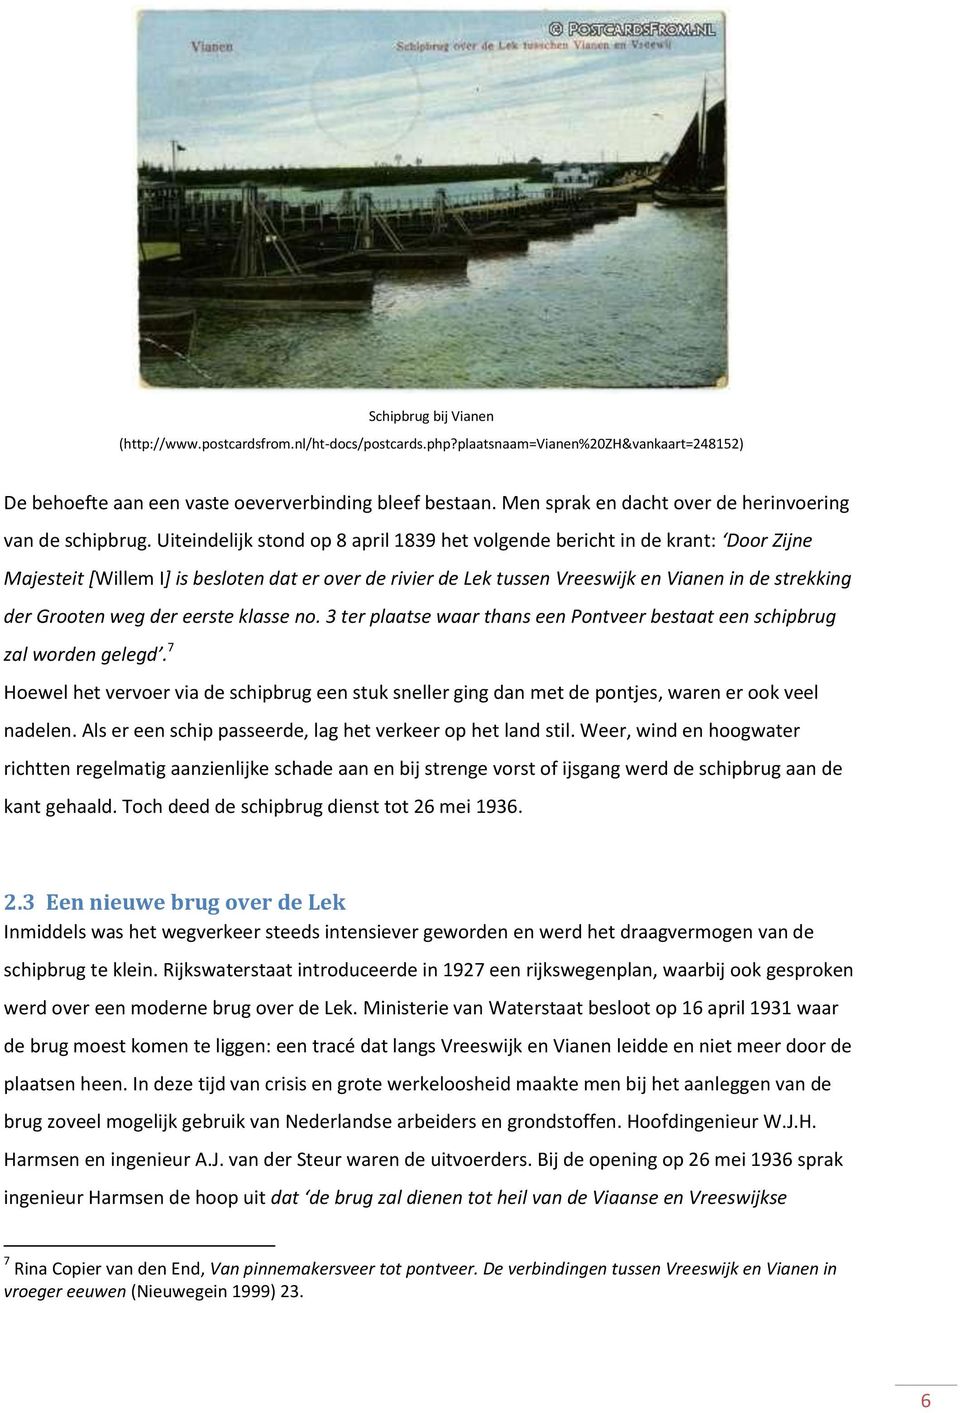 Uiteindelijk stond op 8 april 1839 het volgende bericht in de krant: Door Zijne Majesteit [Willem I] is besloten dat er over de rivier de Lek tussen Vreeswijk en Vianen in de strekking der Grooten